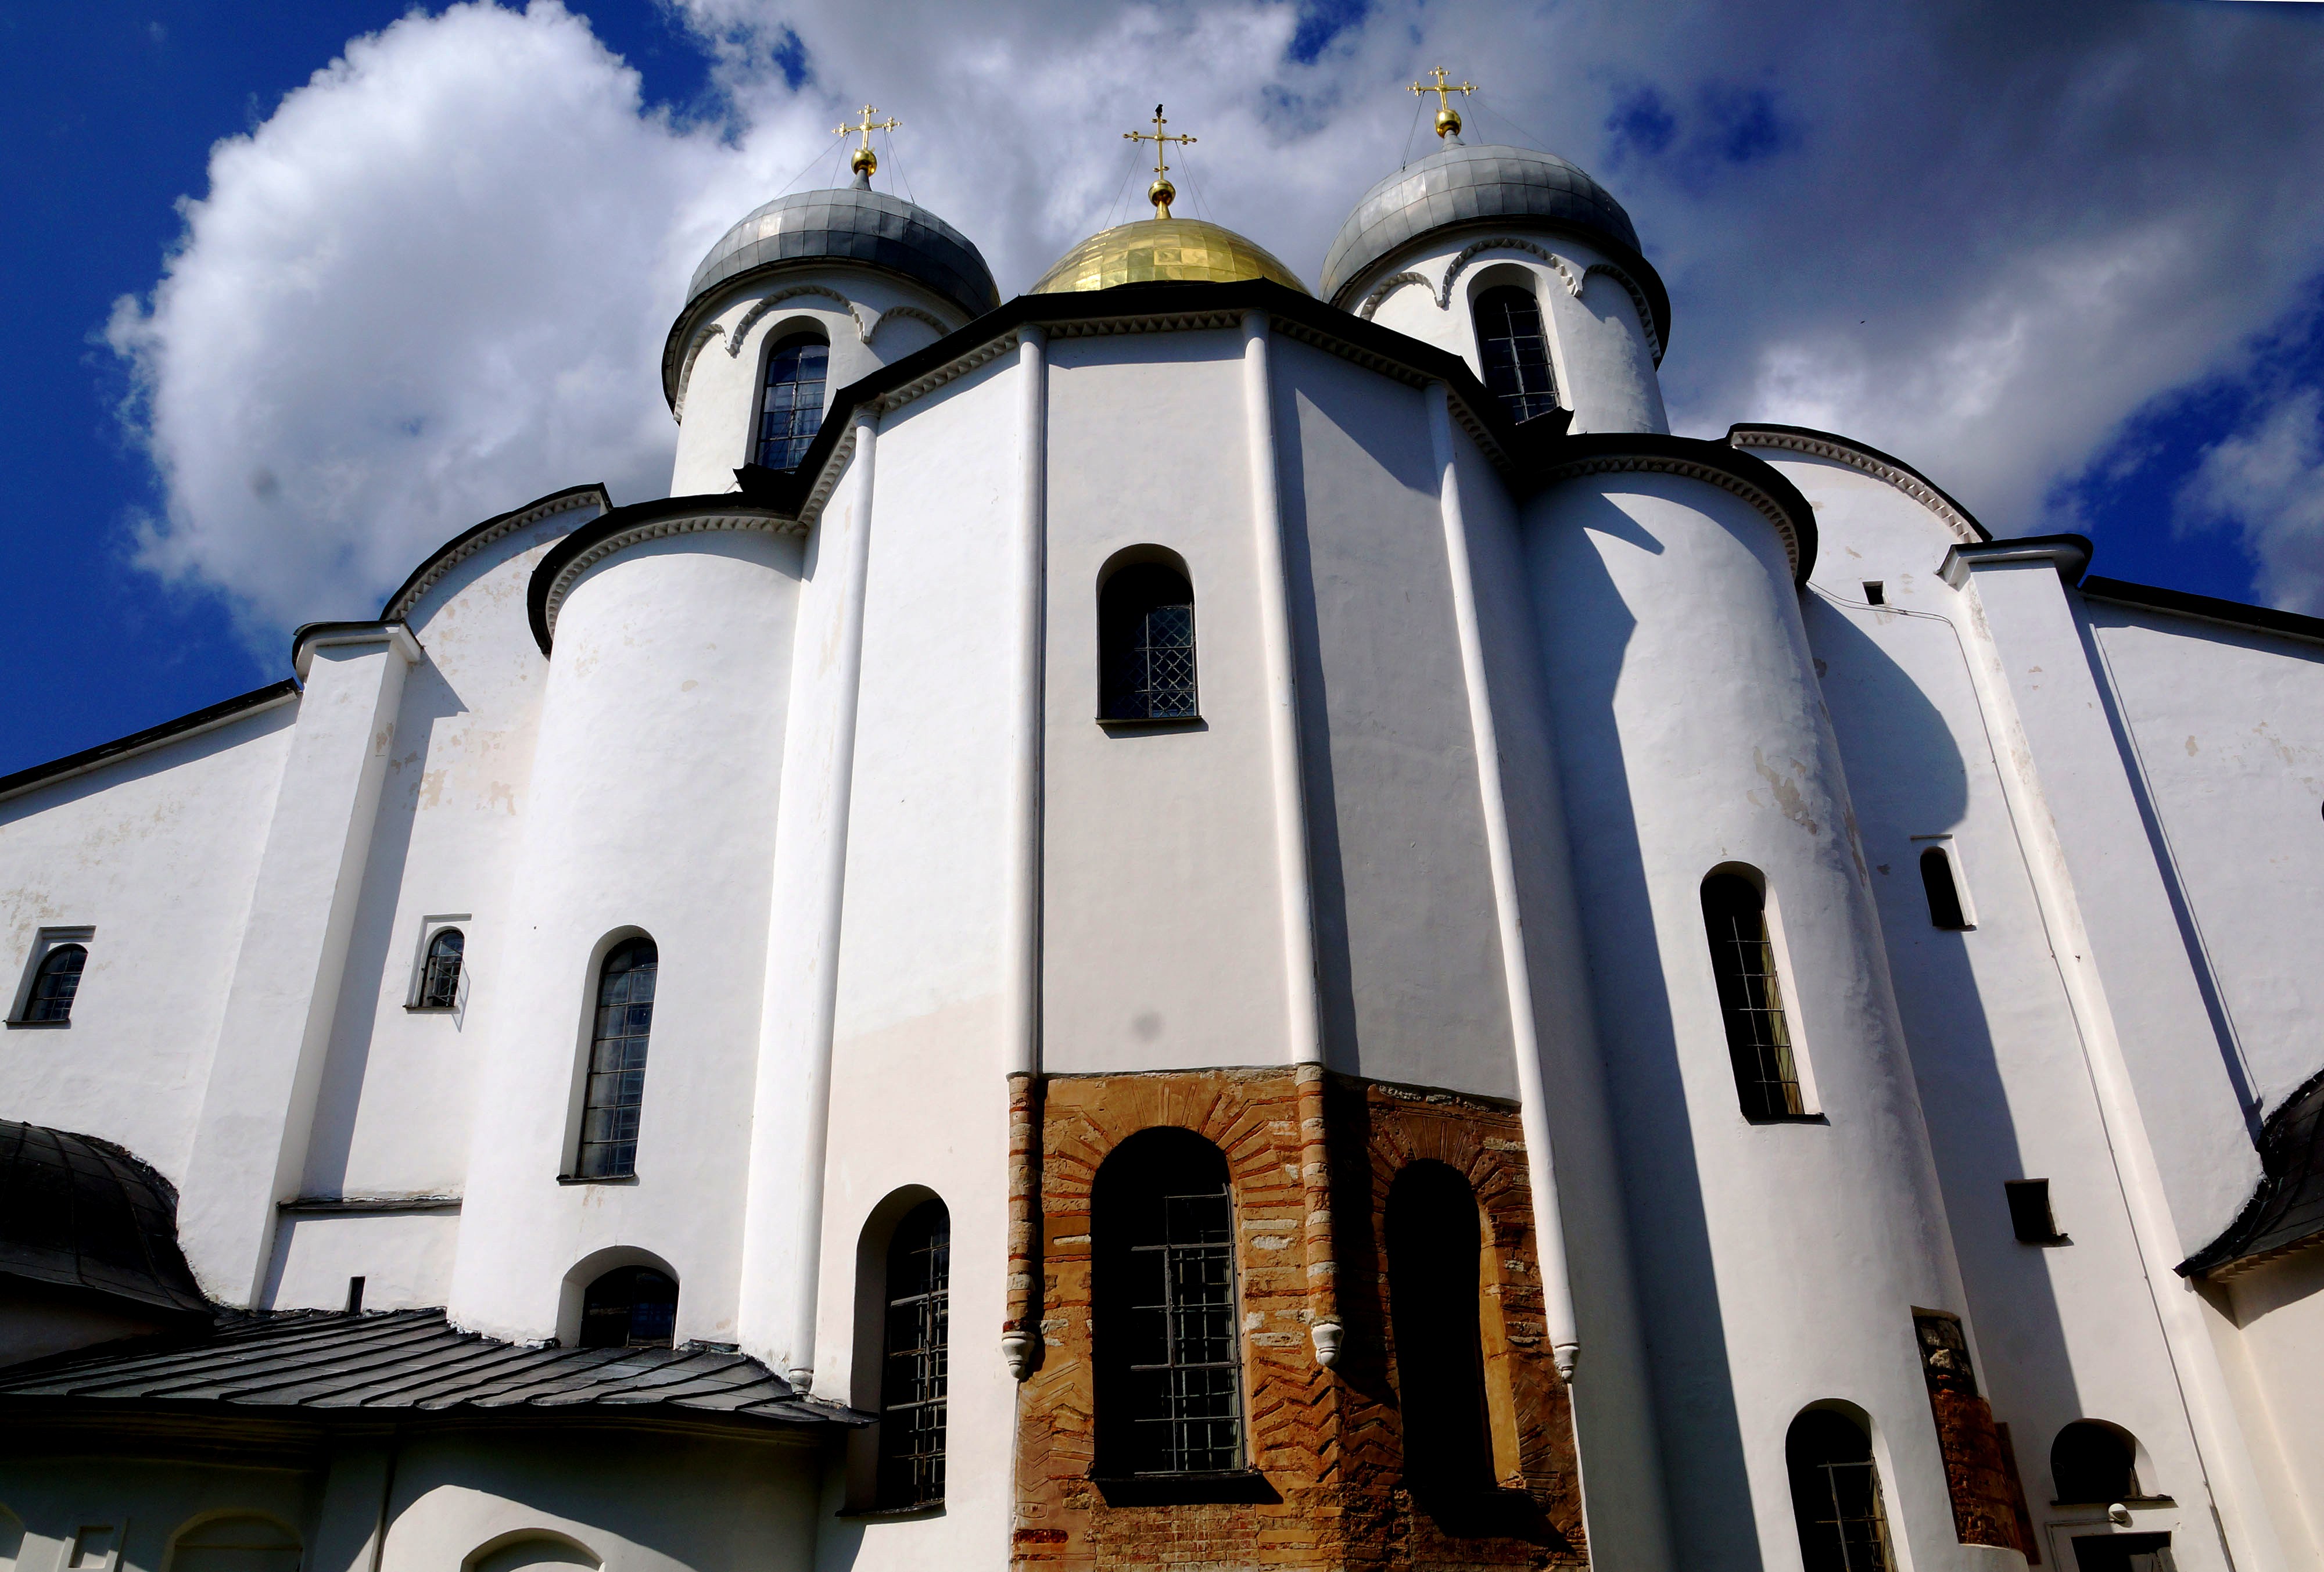 Новгород храм святой софии